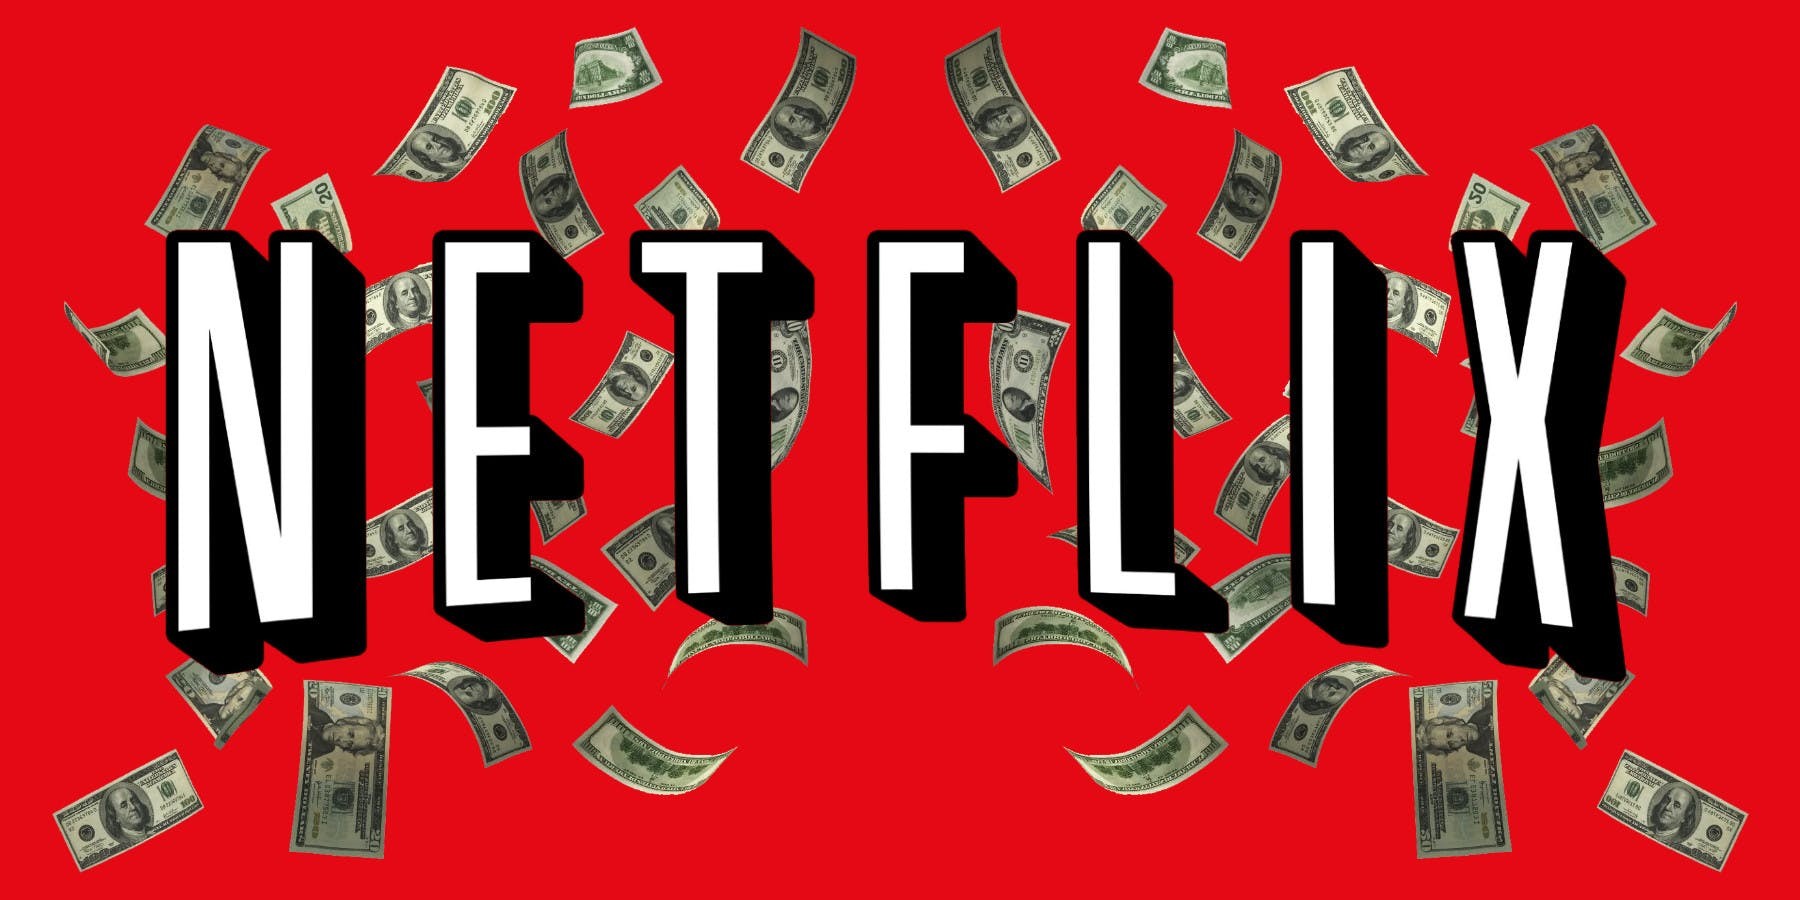 Netflix muda métricas e libera lista de filmes e séries mais